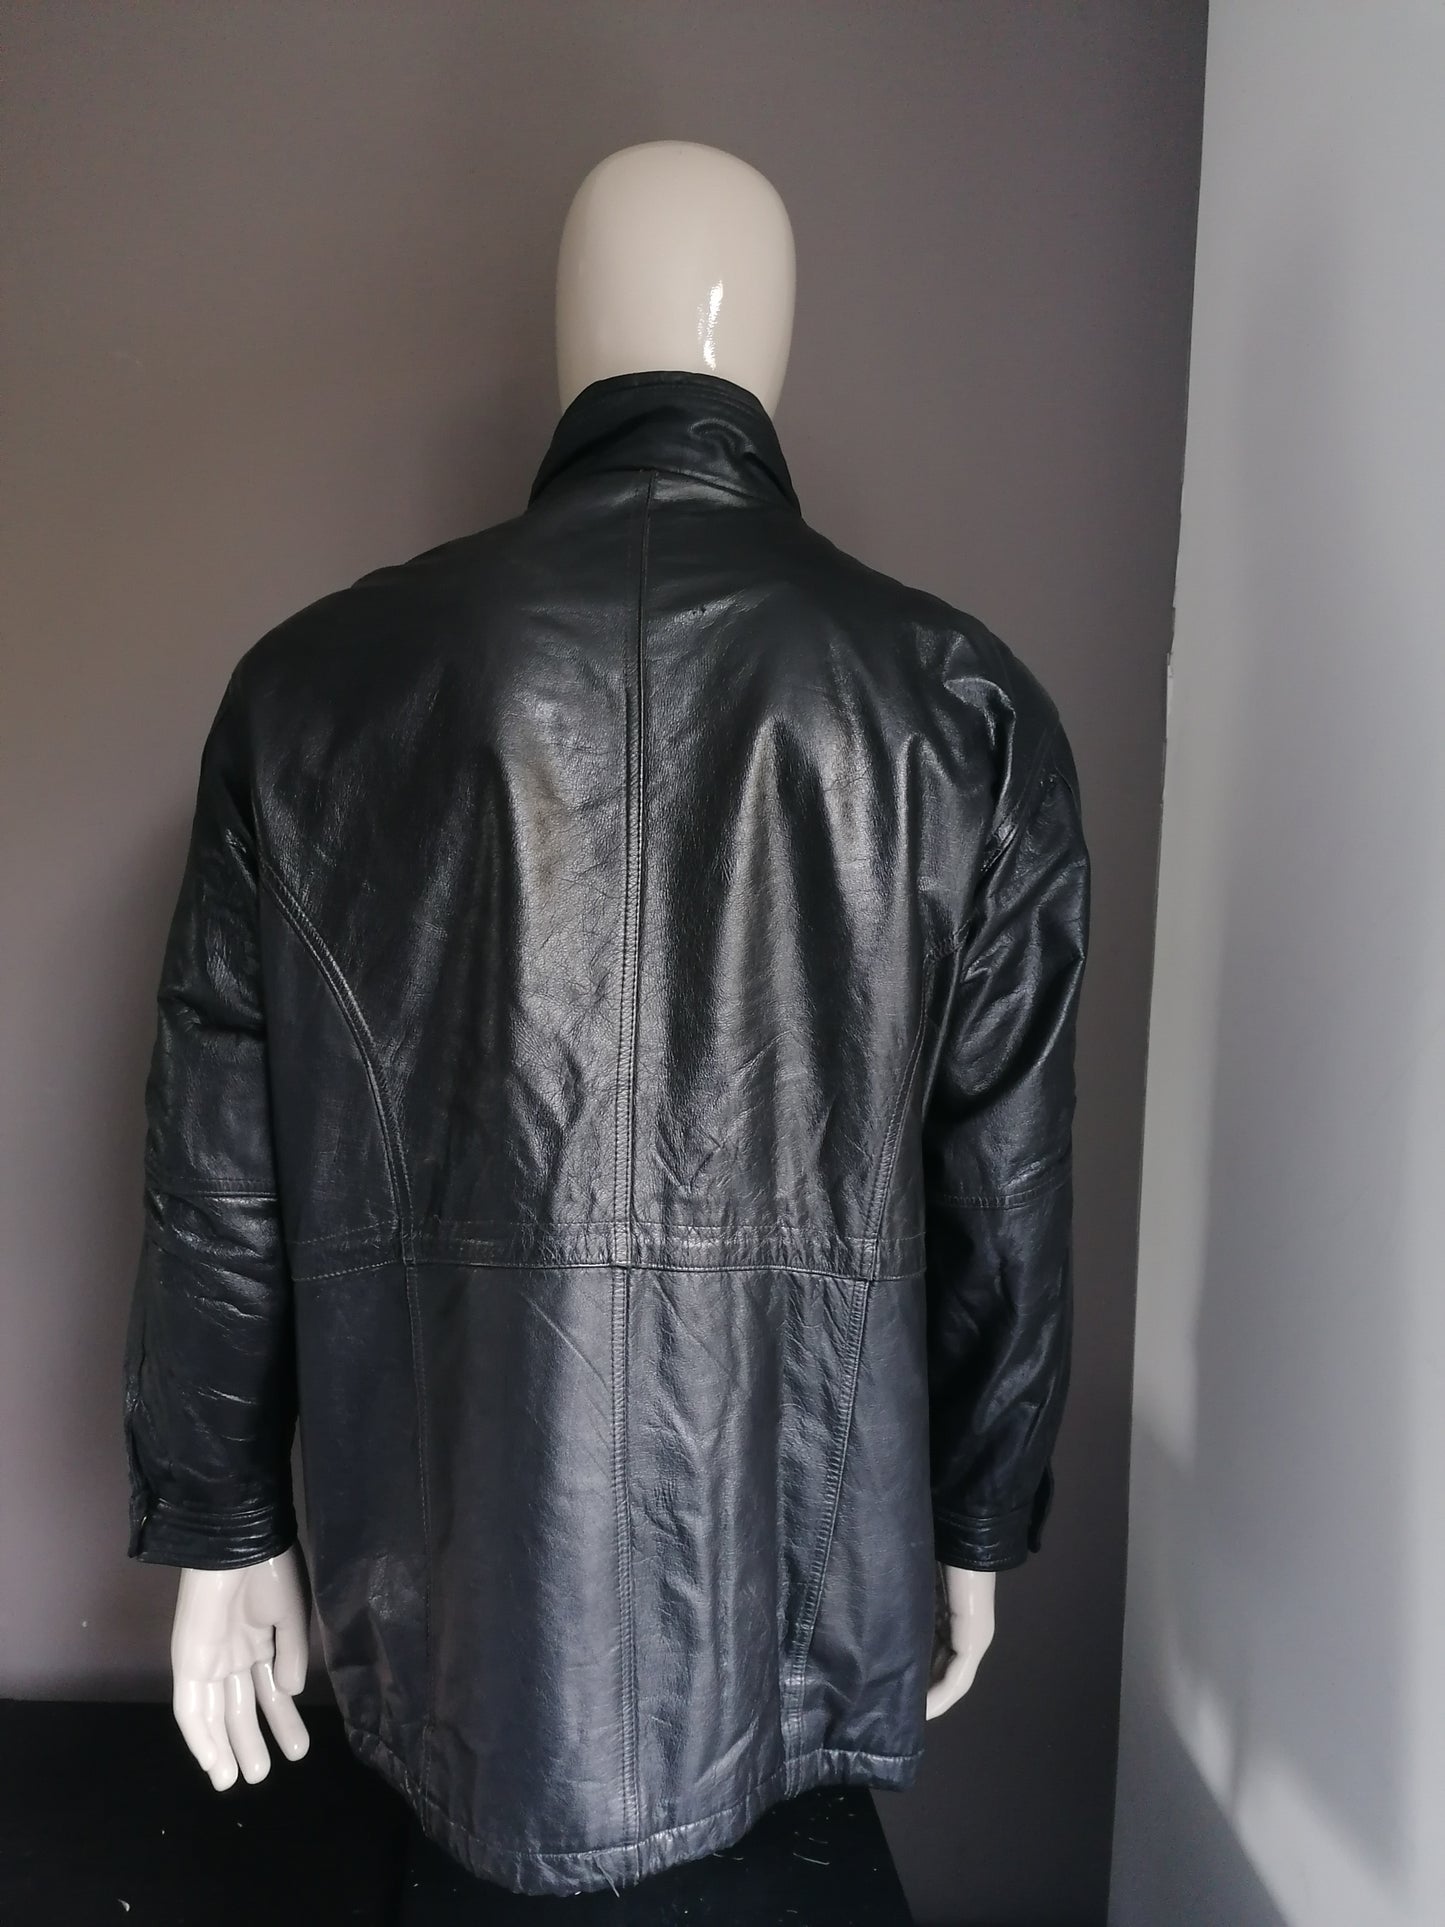 Vintage medio chaqueta de cuero largo. Verde negro de color. Tamaño XL